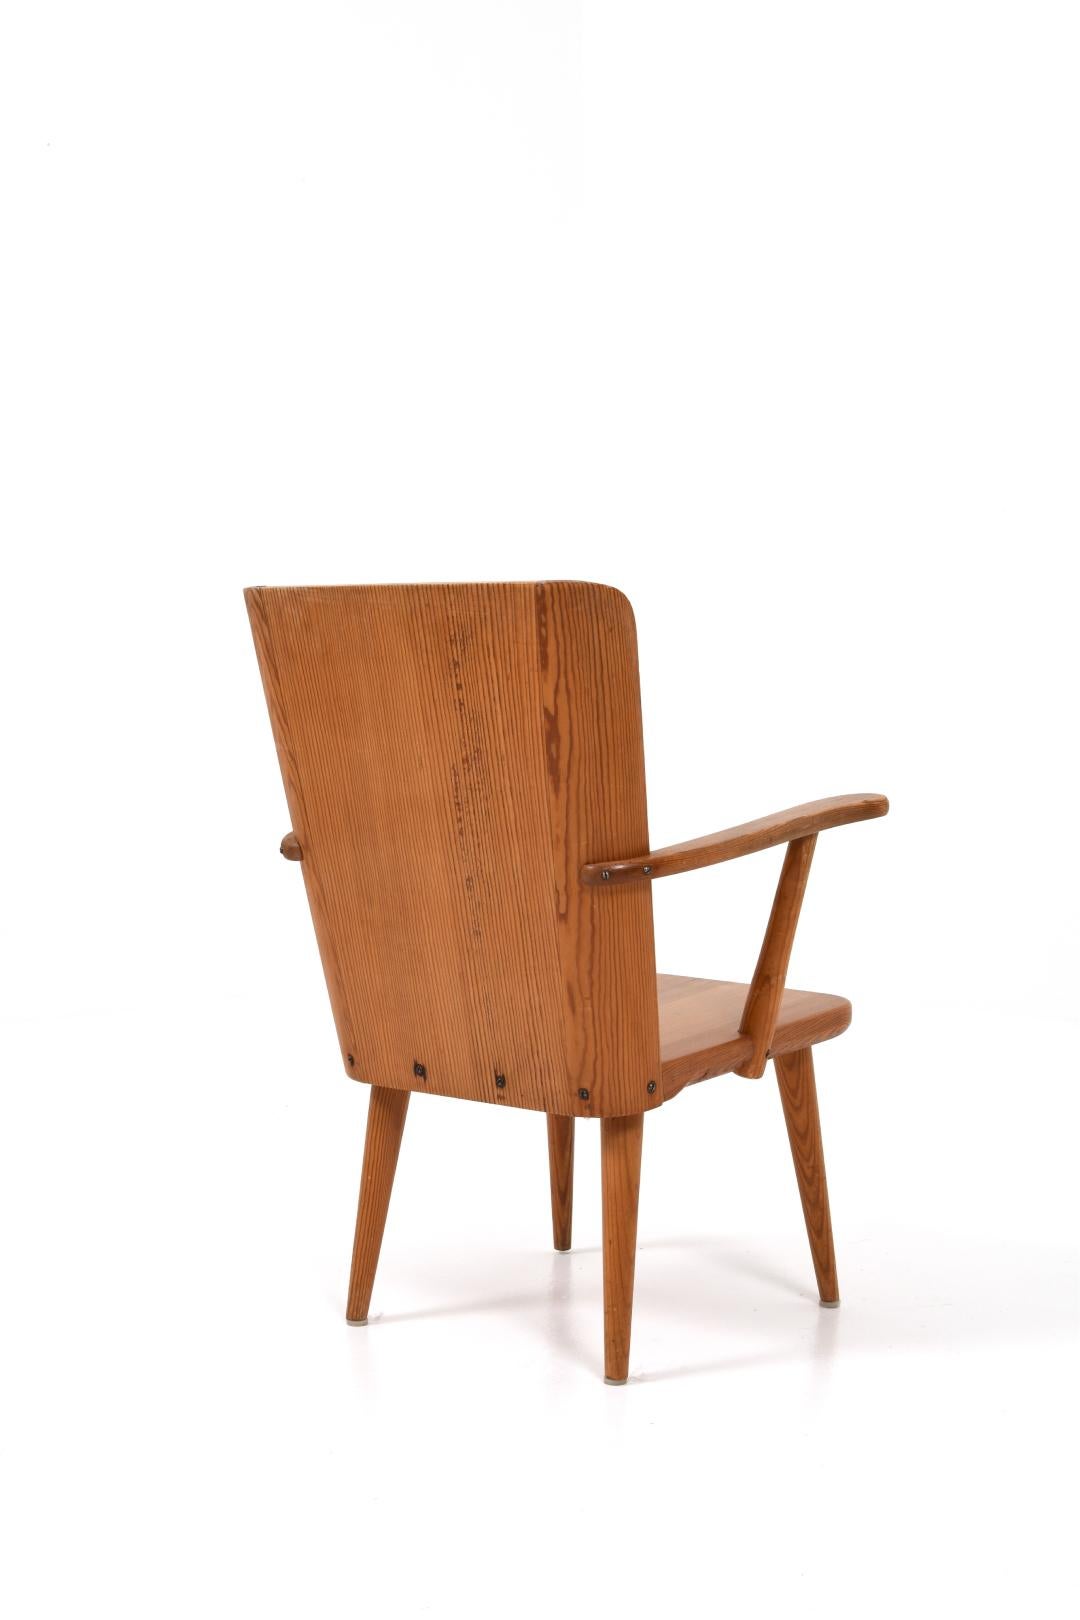 Rare fauteuil suédois en pin par Goran Malmvall pour Svensk Fur. Conçue dans les années 1940.